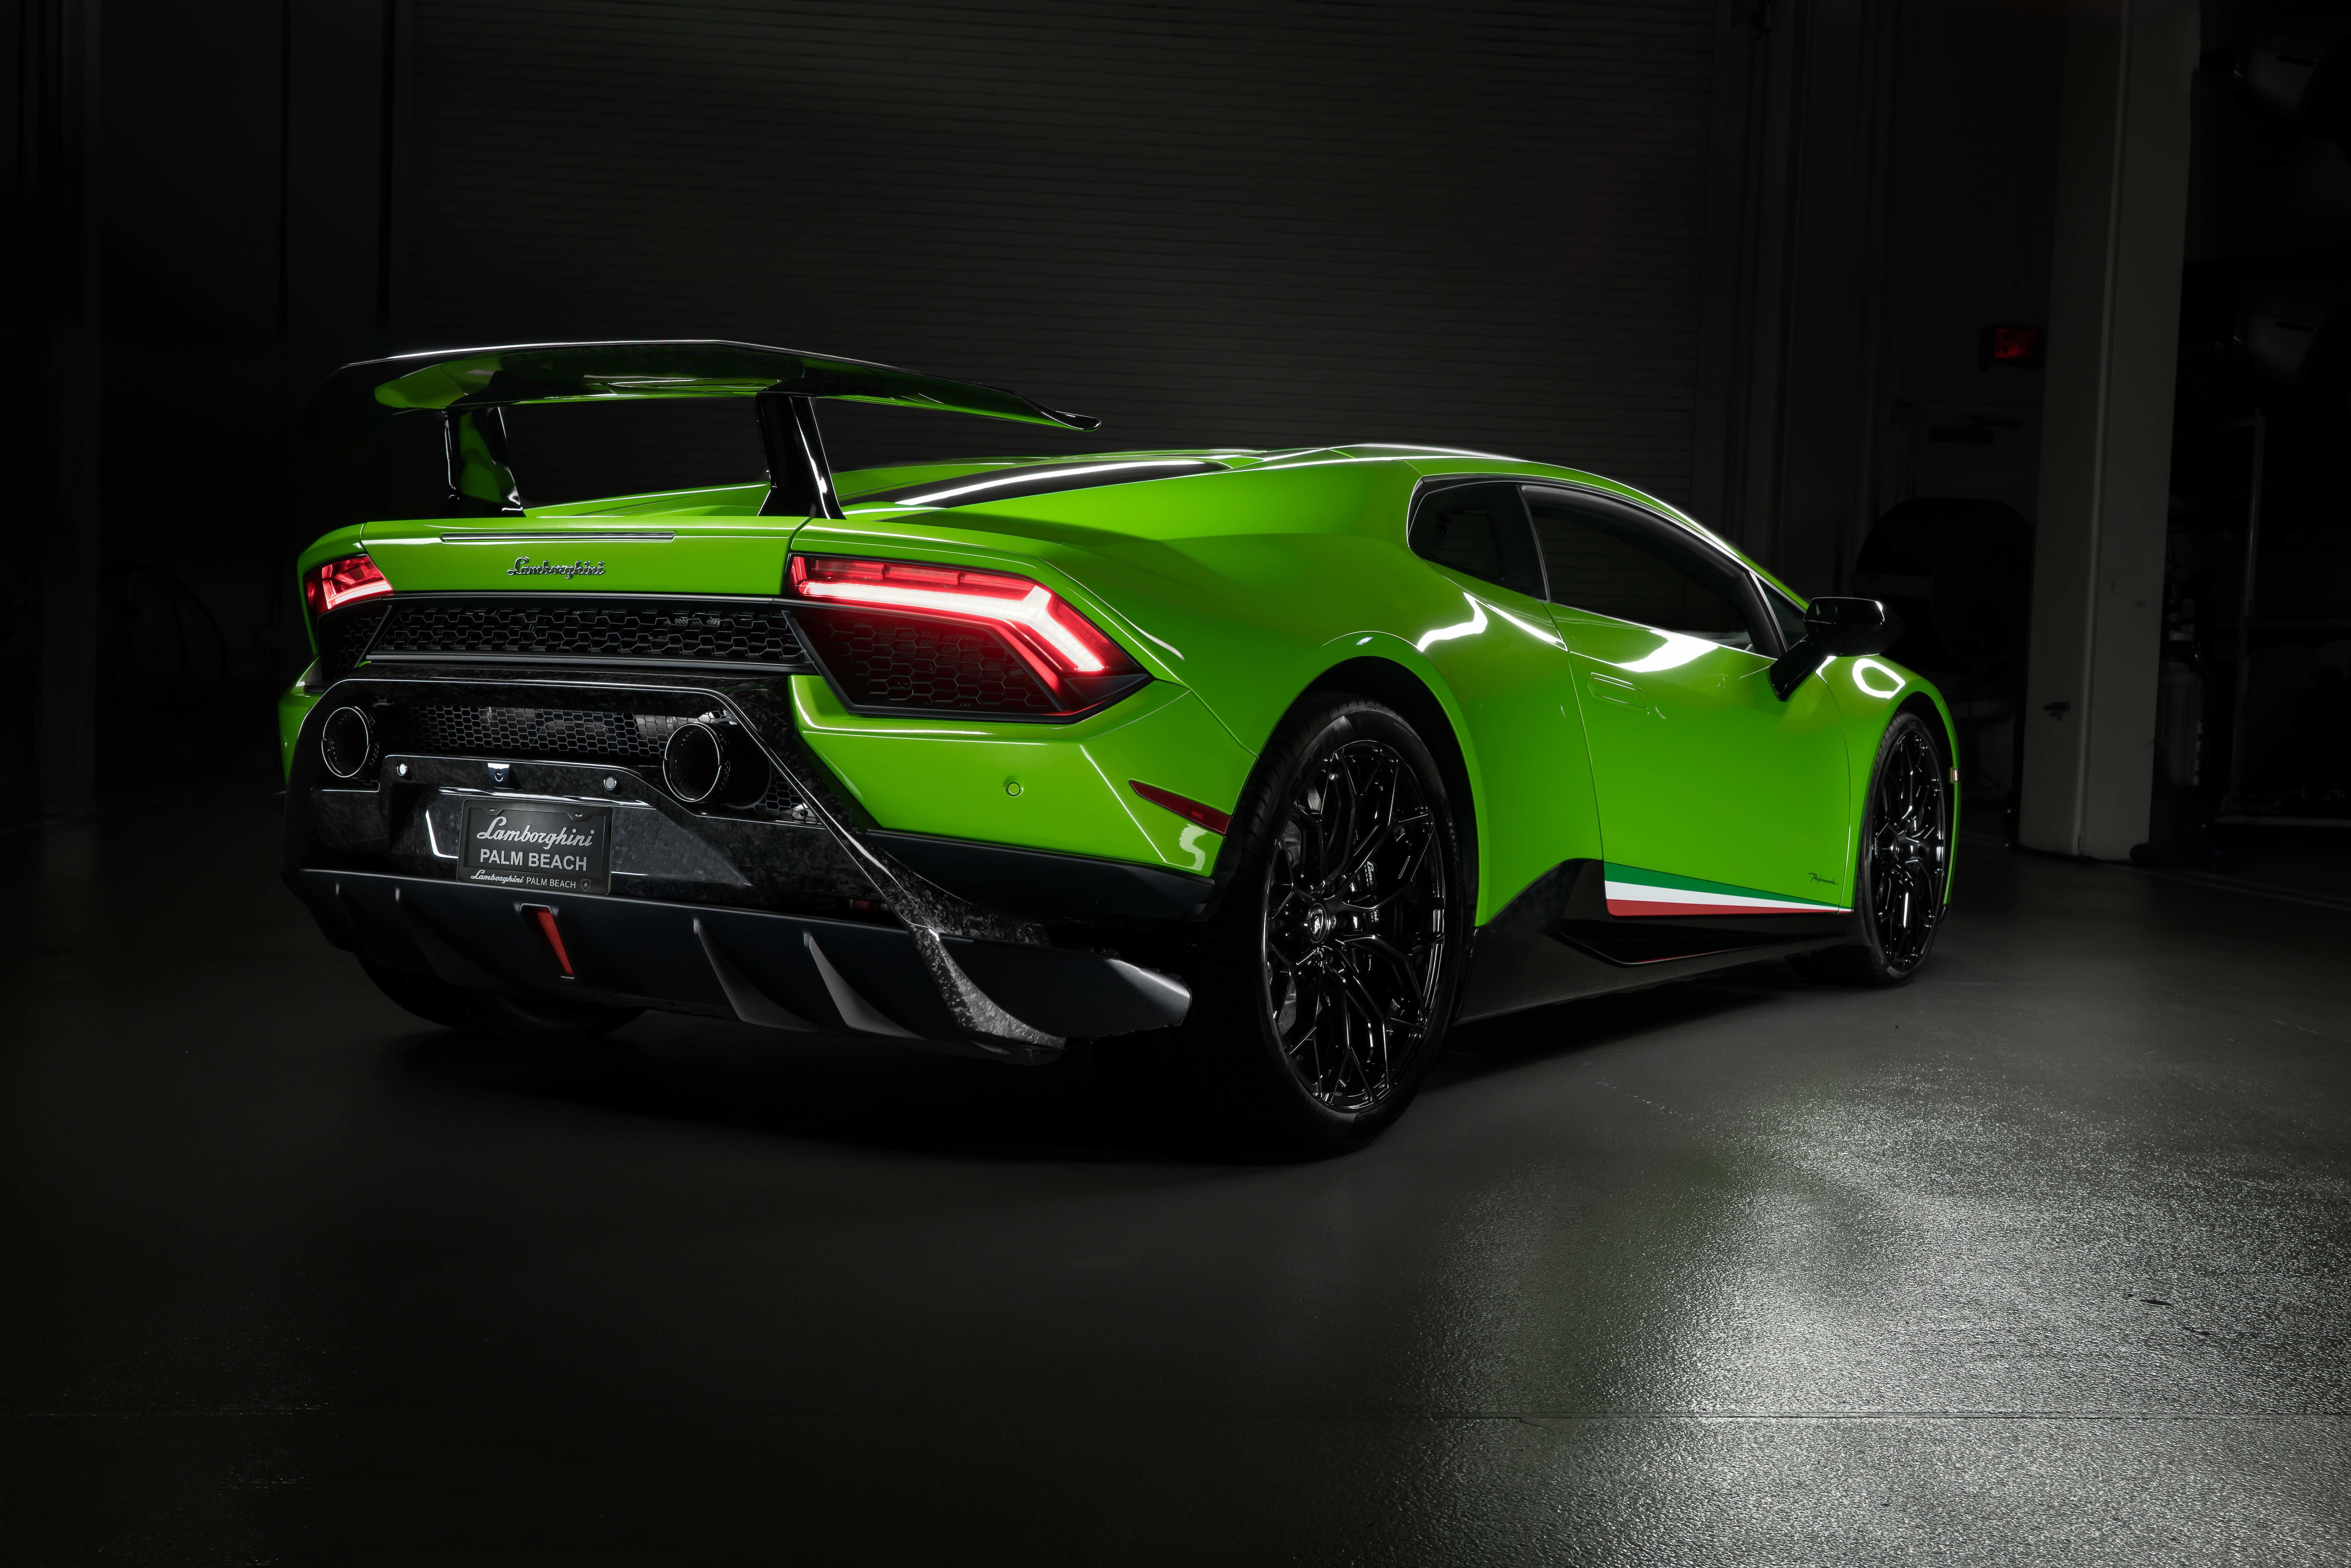 Lamborghini Huracan Performante 2019 Rear 8k, HD Cars, 4k ...